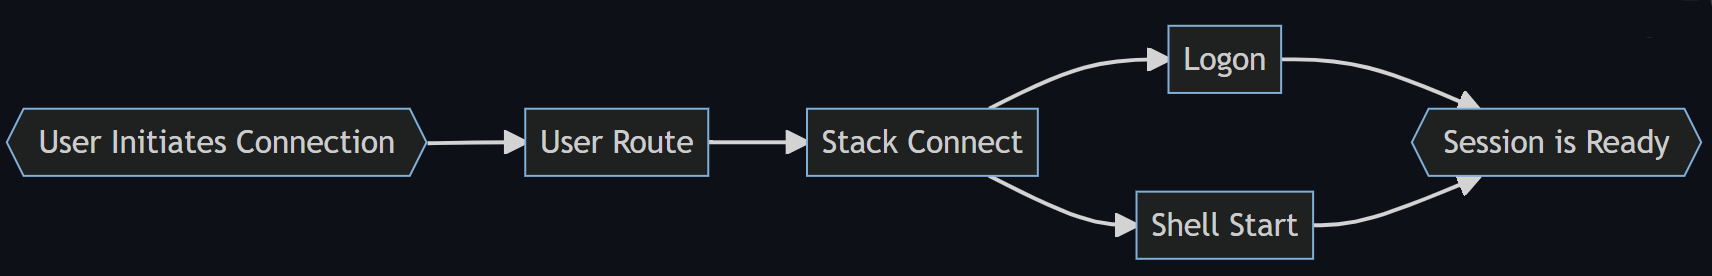 مخطط انسيابي يوضح المراحل الأربع لعملية تسجيل الدخول: مسار المستخدم، وStack Connected، وLogon، وShell Start to Shell Ready.